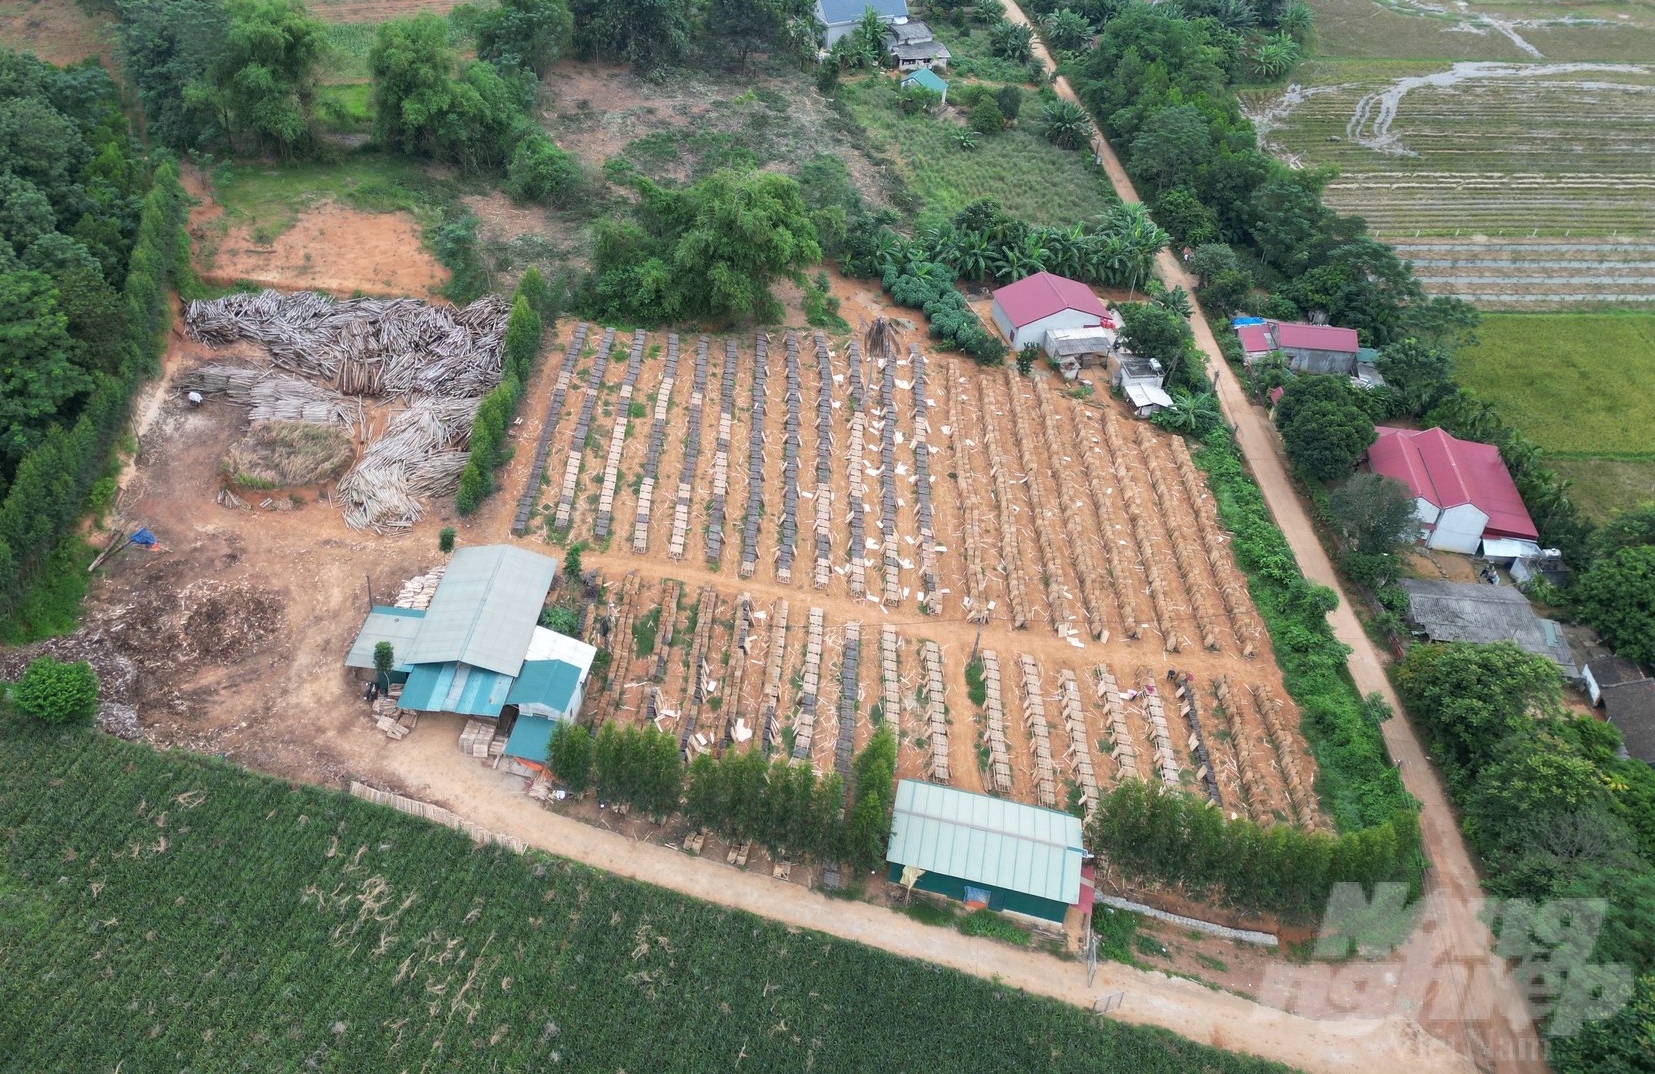 Cơ sở chế biến gỗ keo tại xã Thành Tâm, huyện Thạch Thành. Ảnh: ĐT.